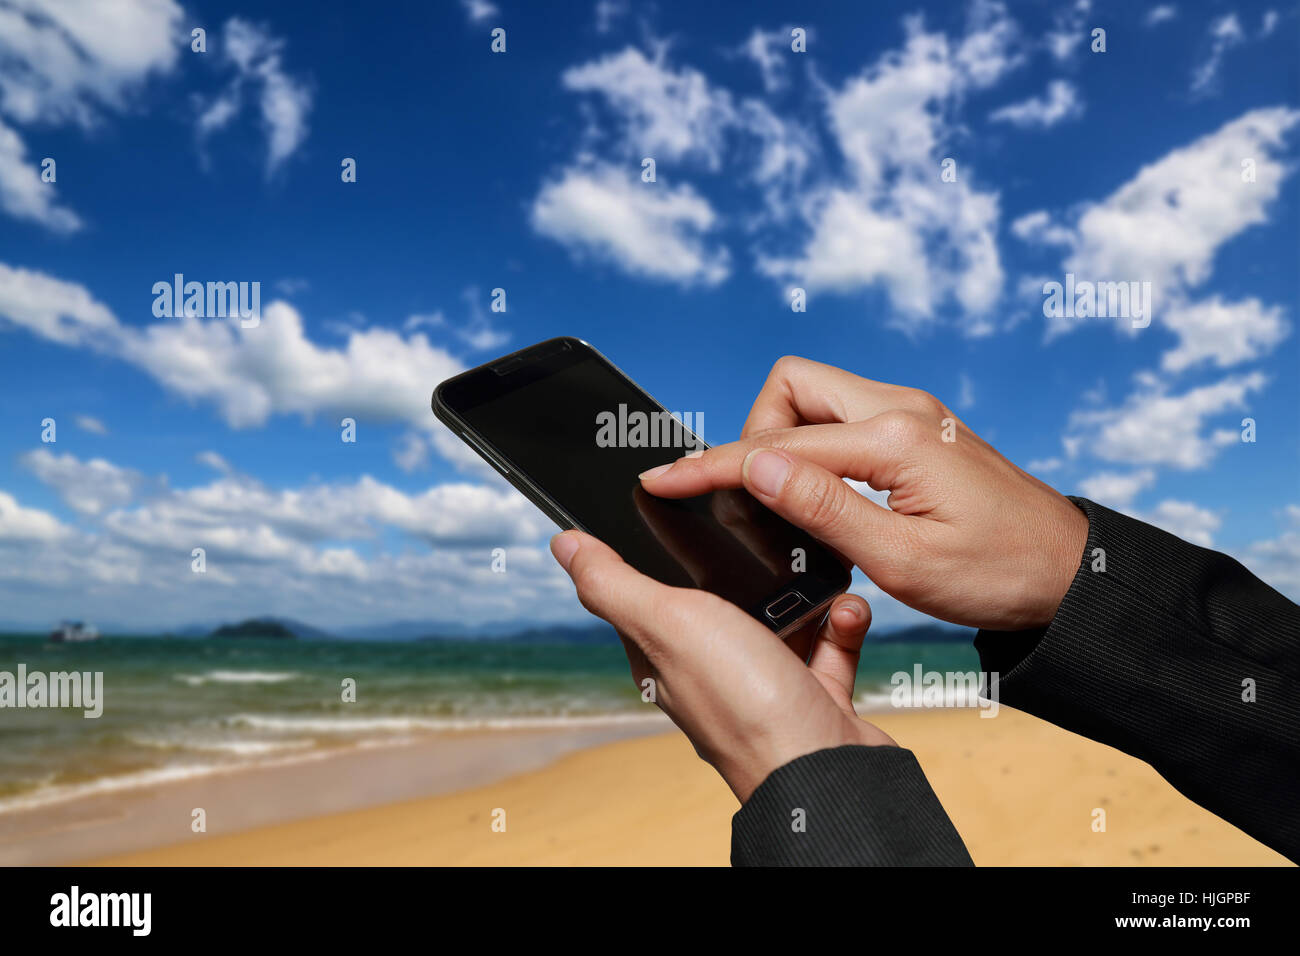 Donna tenere in mano e il touch screen smart phone, cellphone su sfocato astratto e blu cielo nuvoloso sulla spiaggia sfondo. Foto Stock